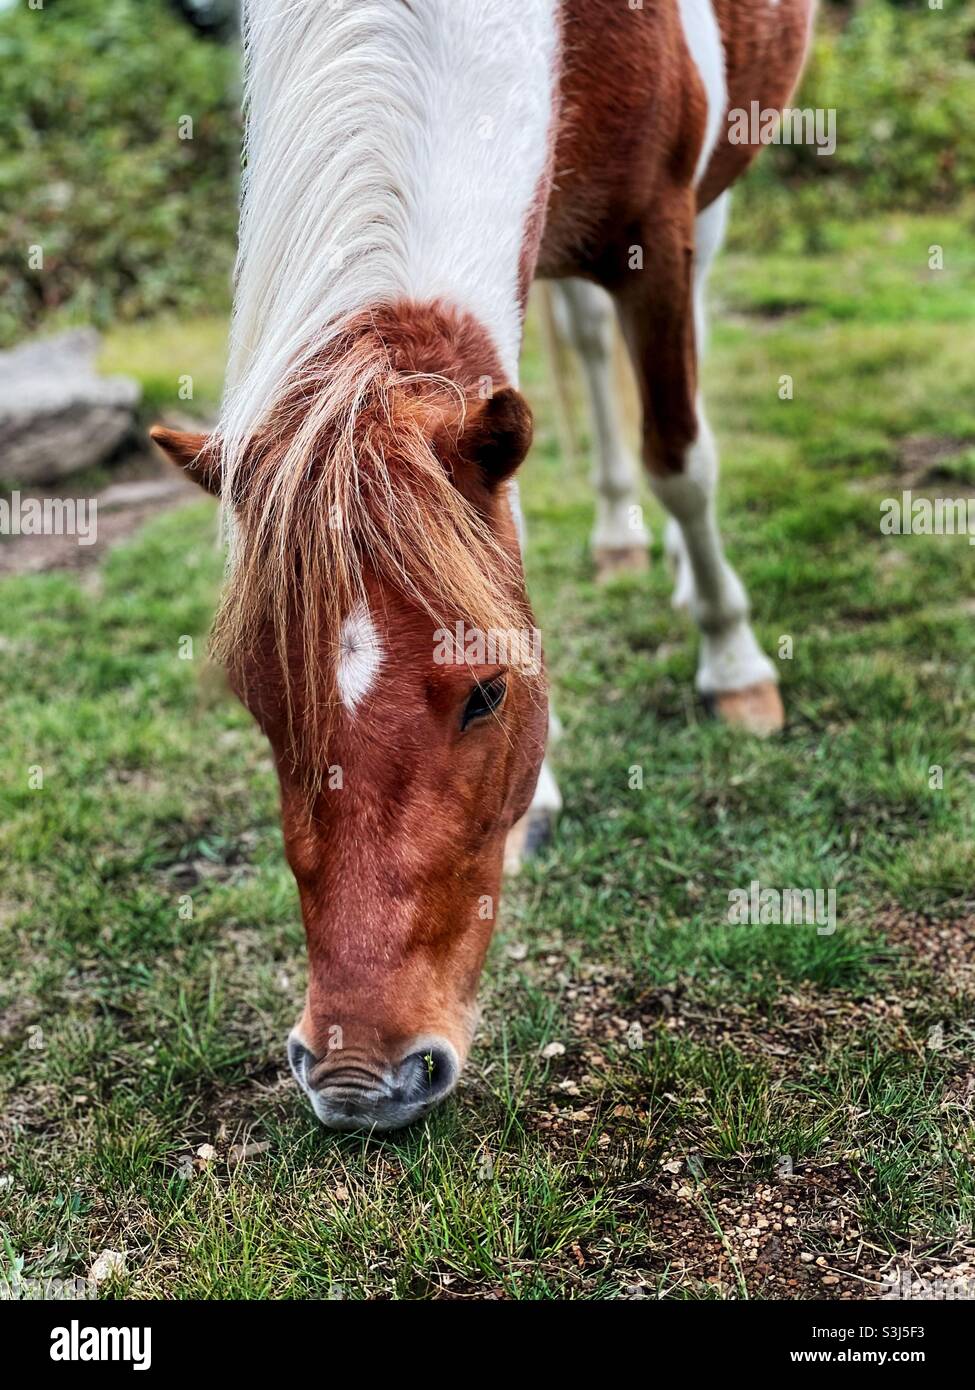 A wild pony grazes on the grass. Stock Photo